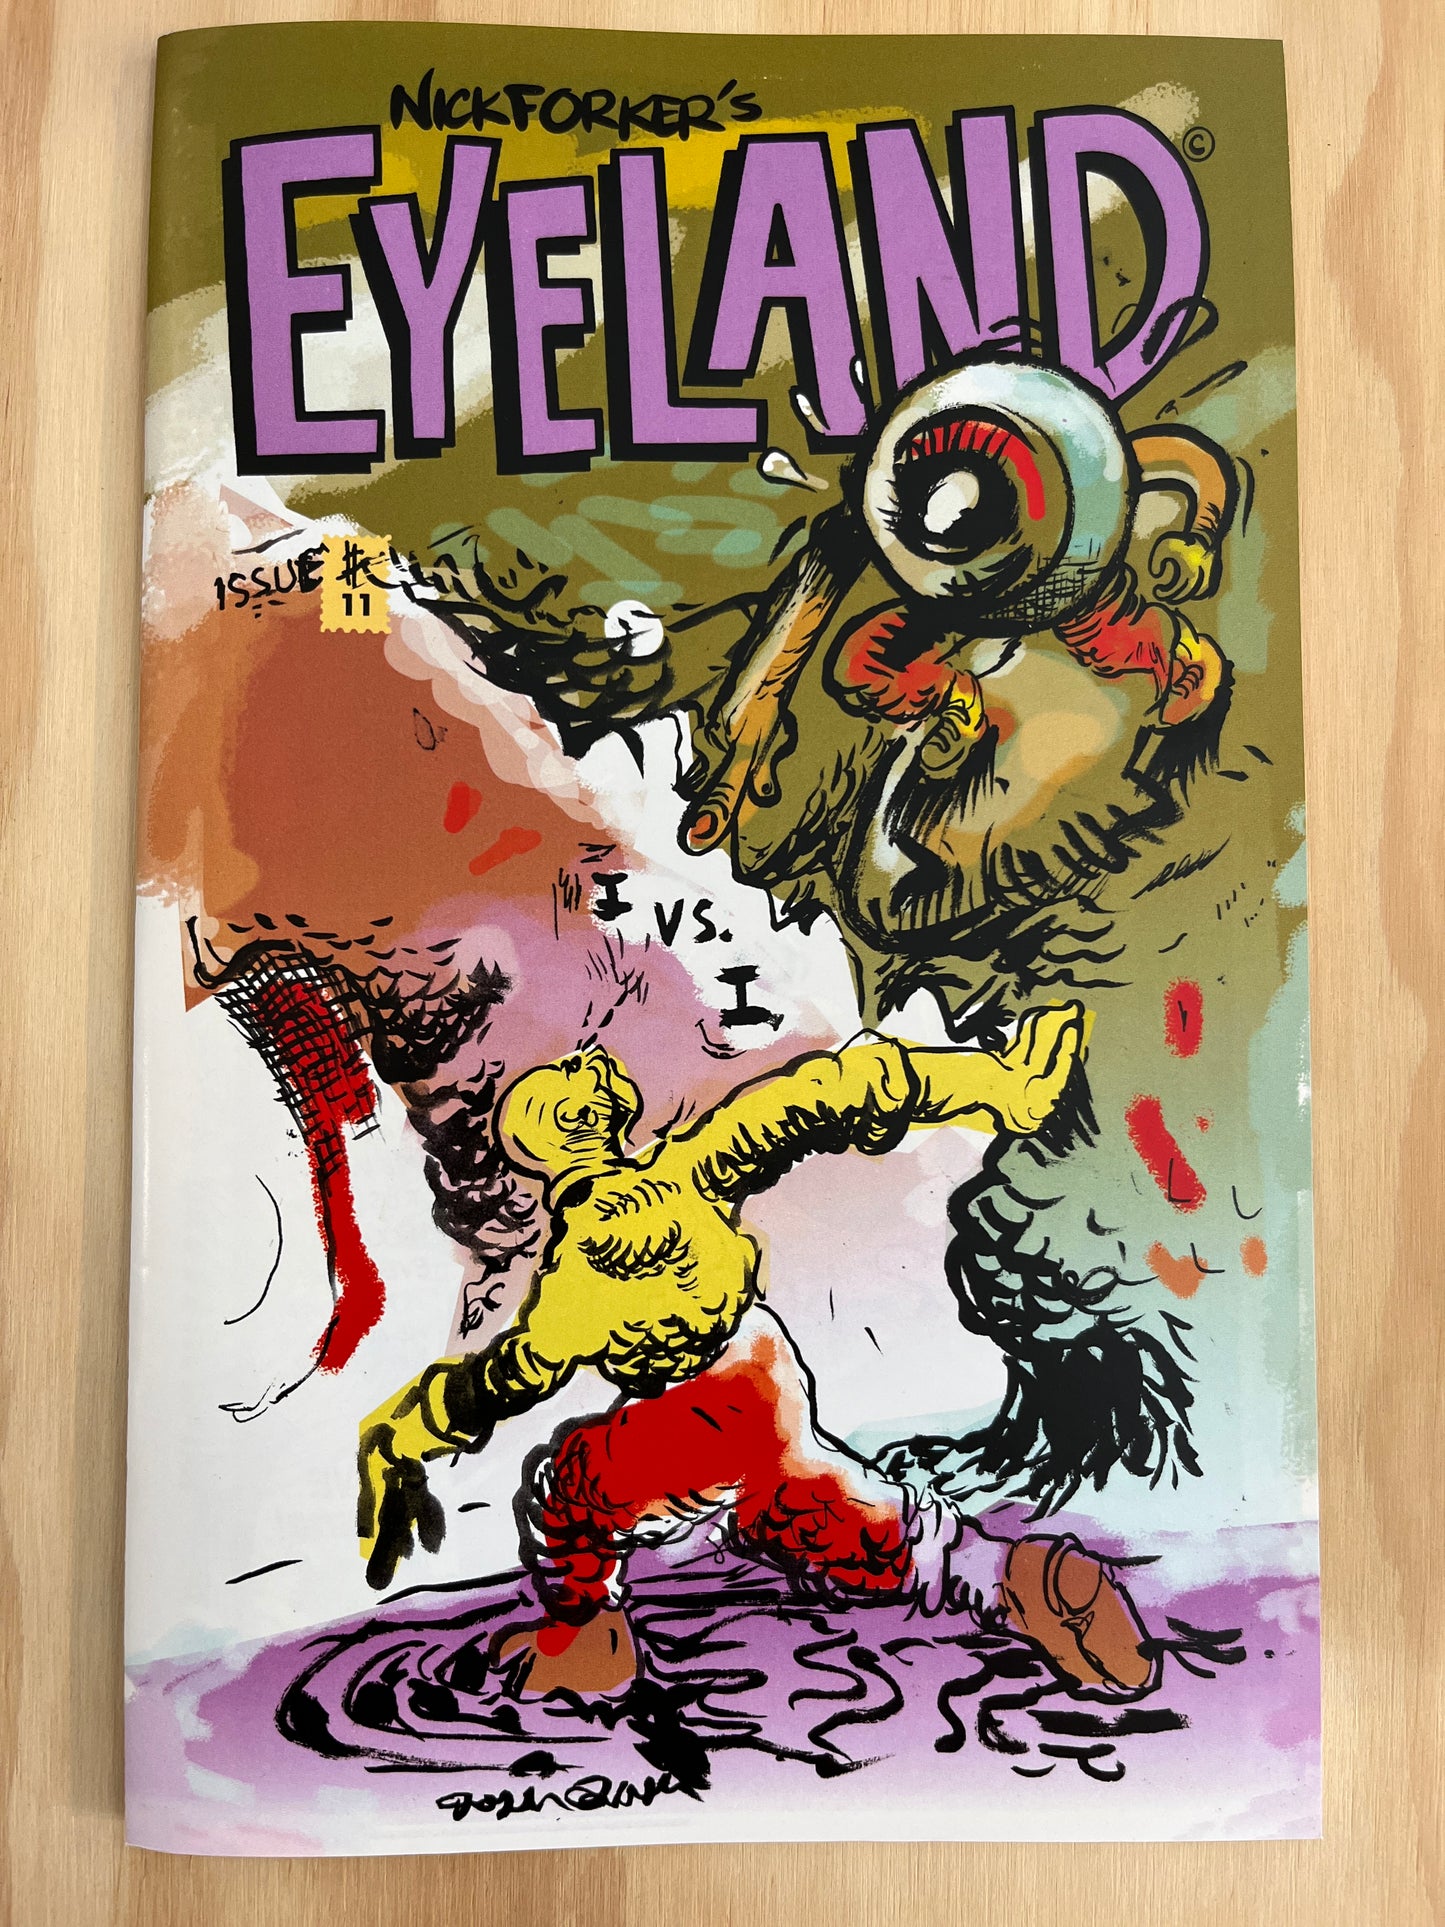 Eyeland #11